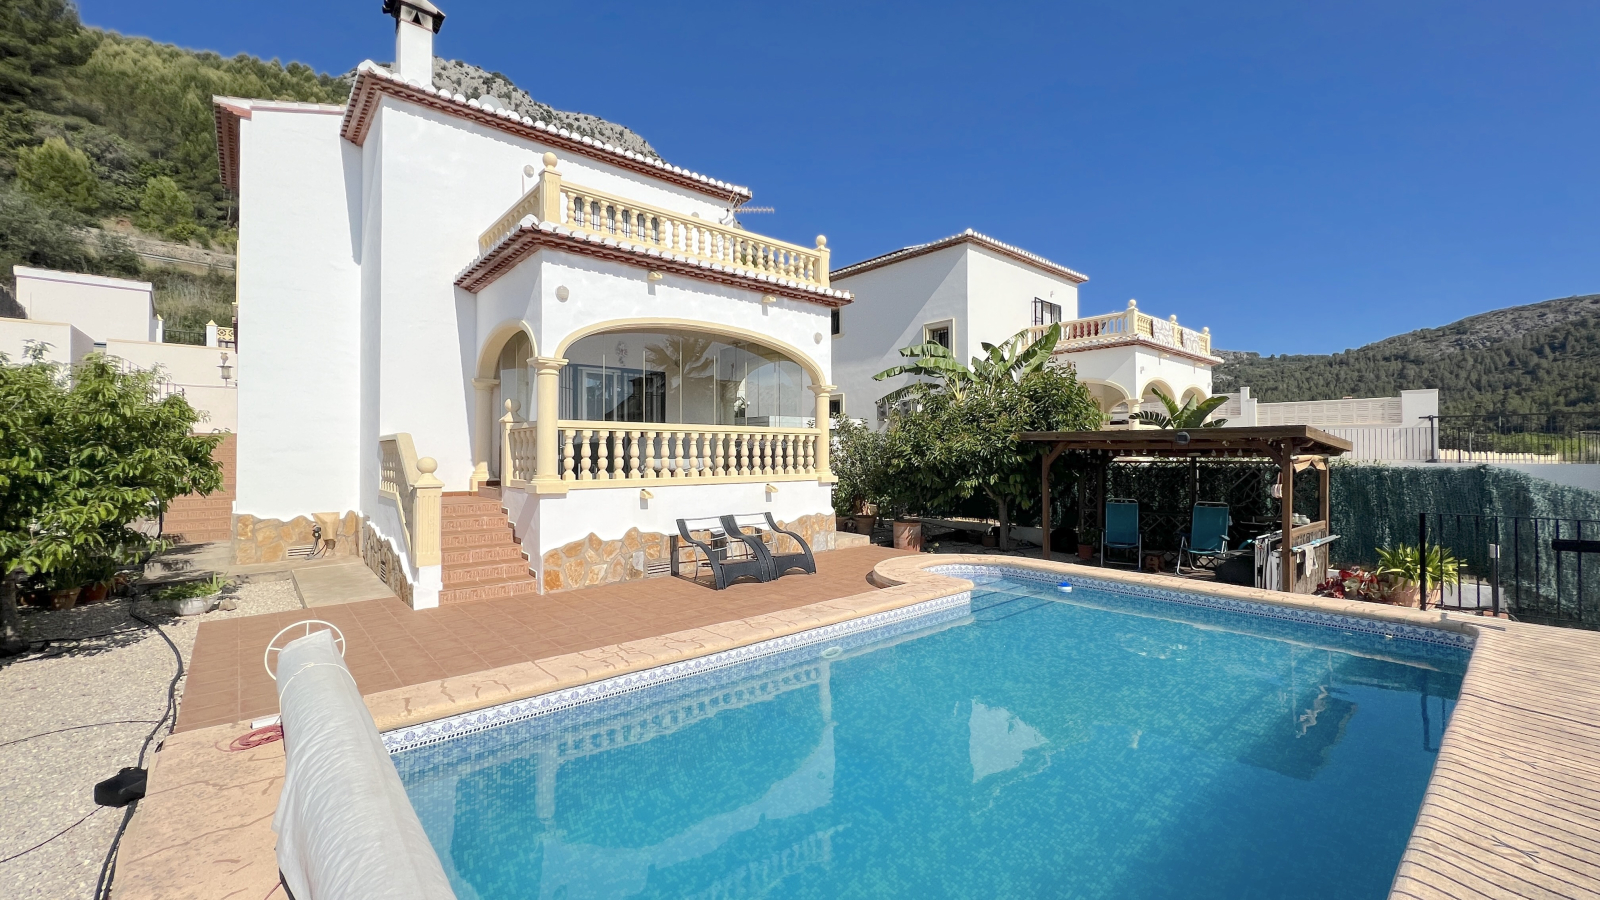 Mediterrane villa met 3 slaapkamers en moderne accenten nabij Denia